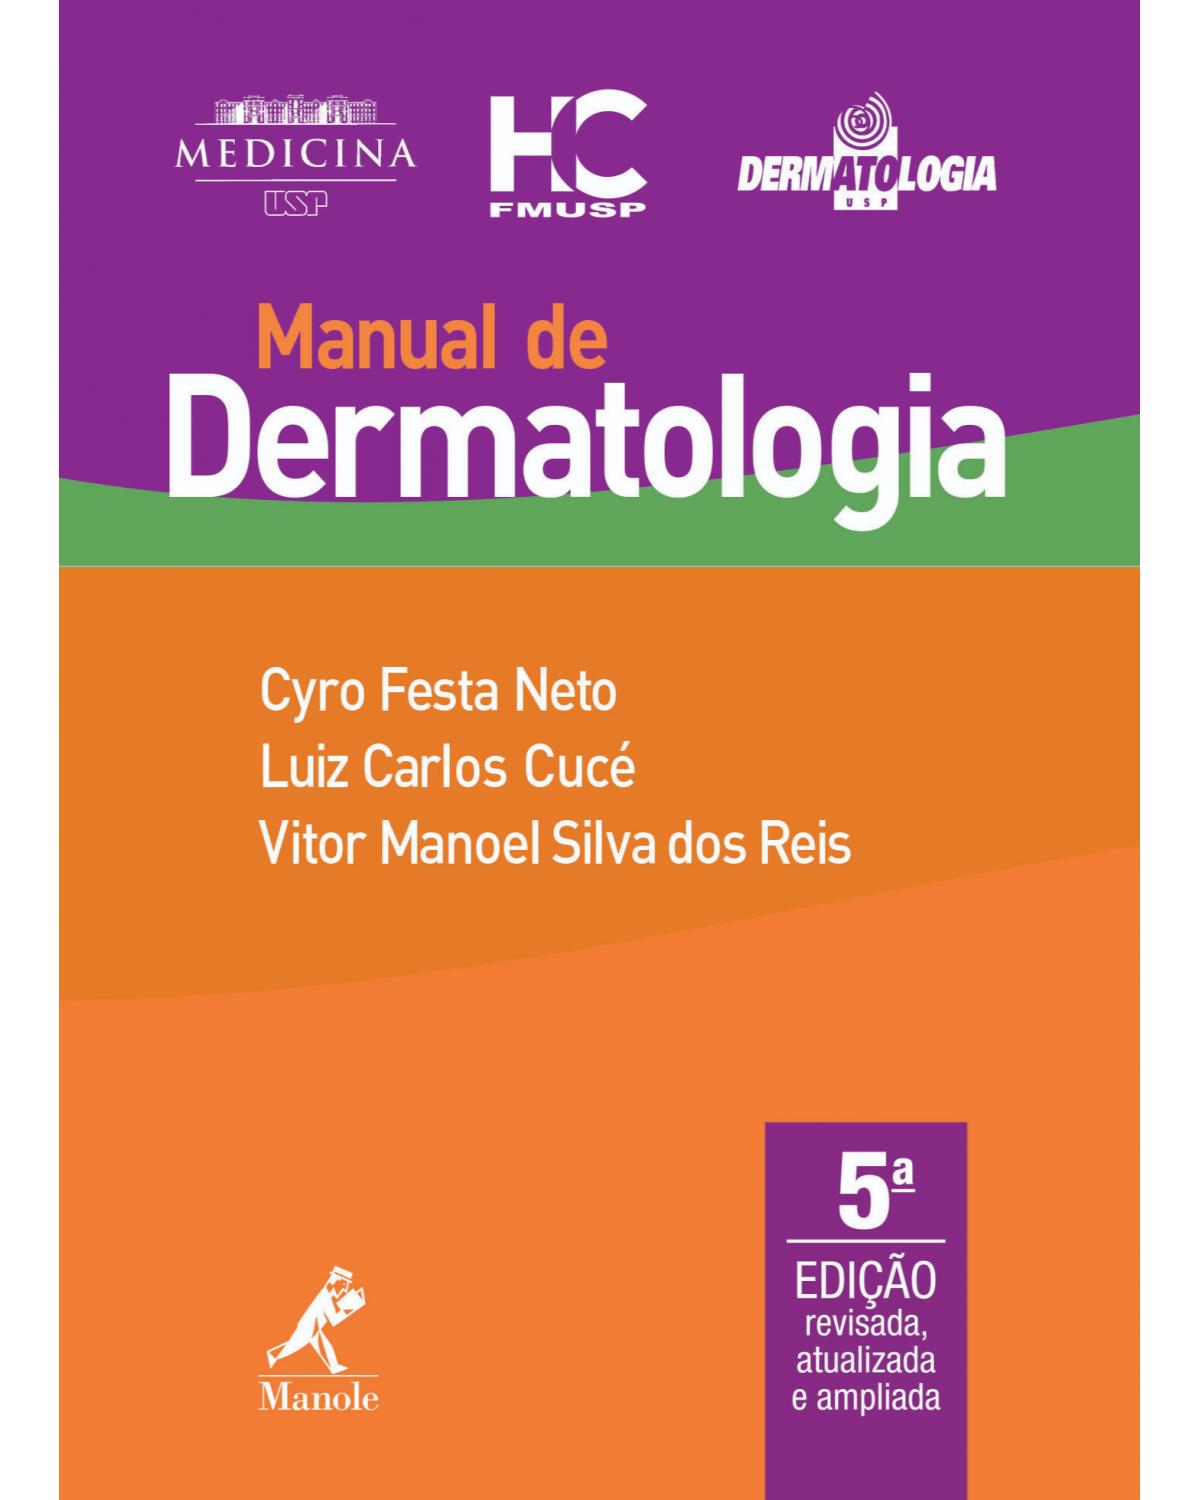 Manual de dermatologia - 5ª Edição | 2019